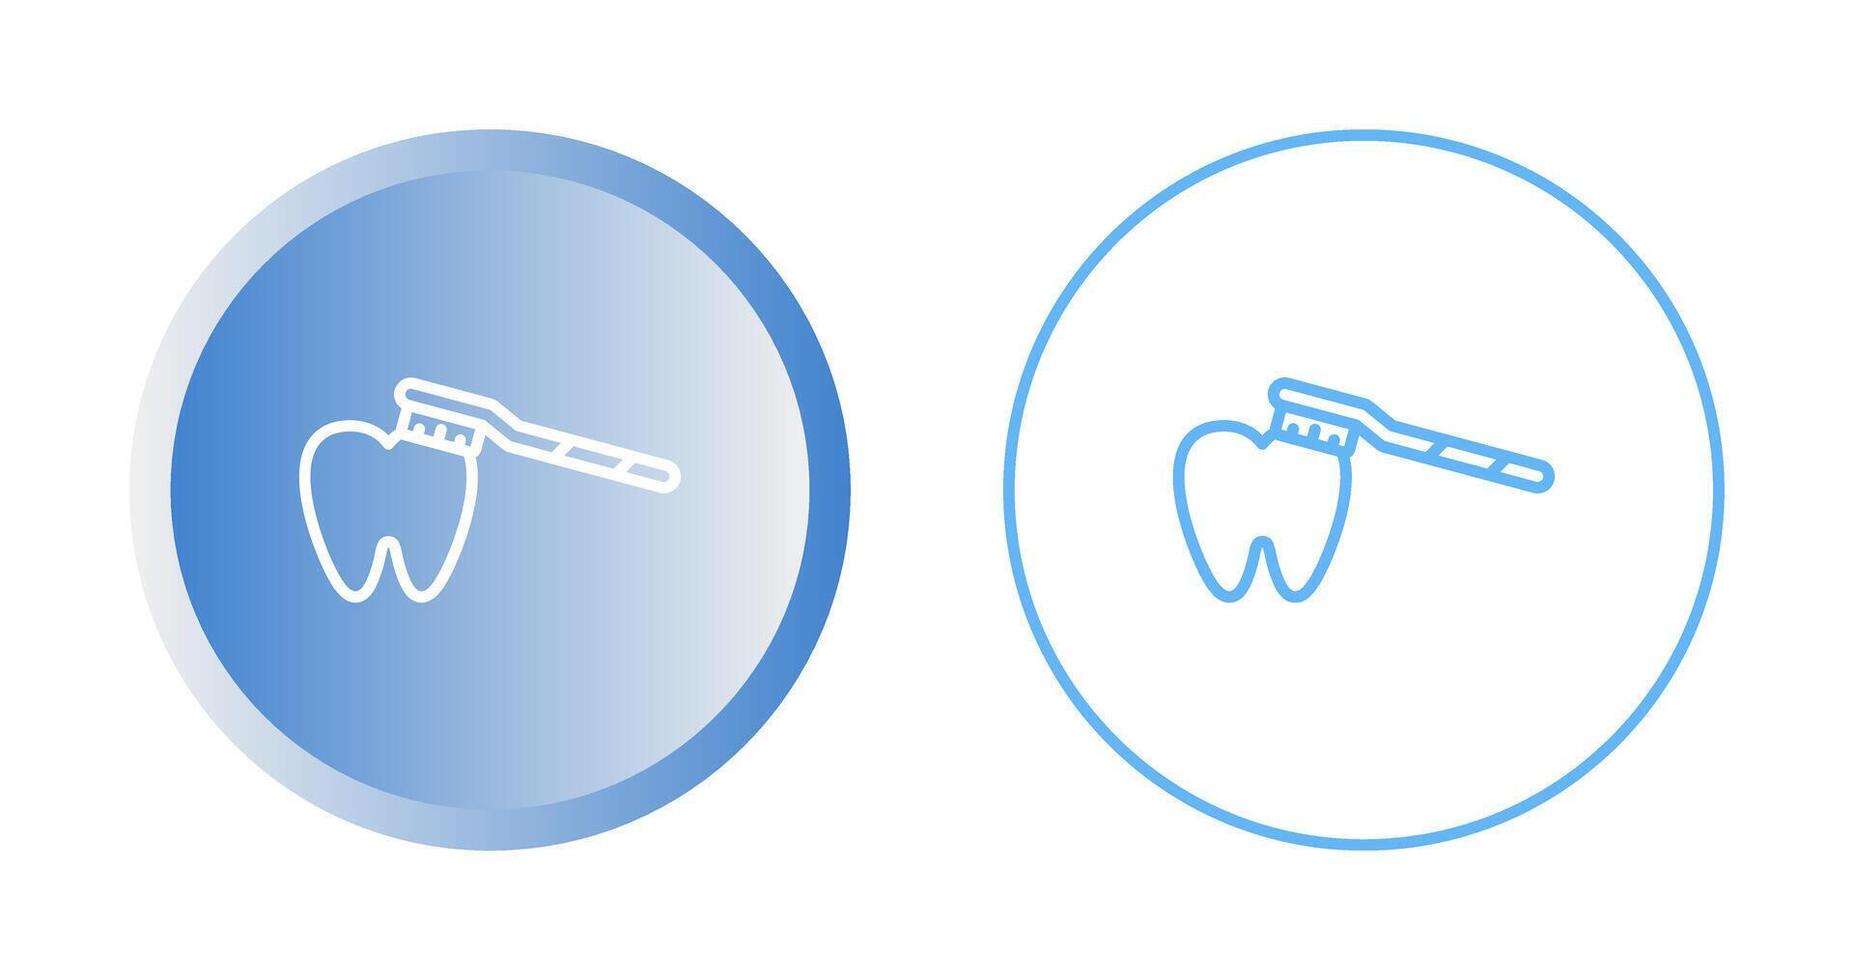 cepillado dientes vector icono